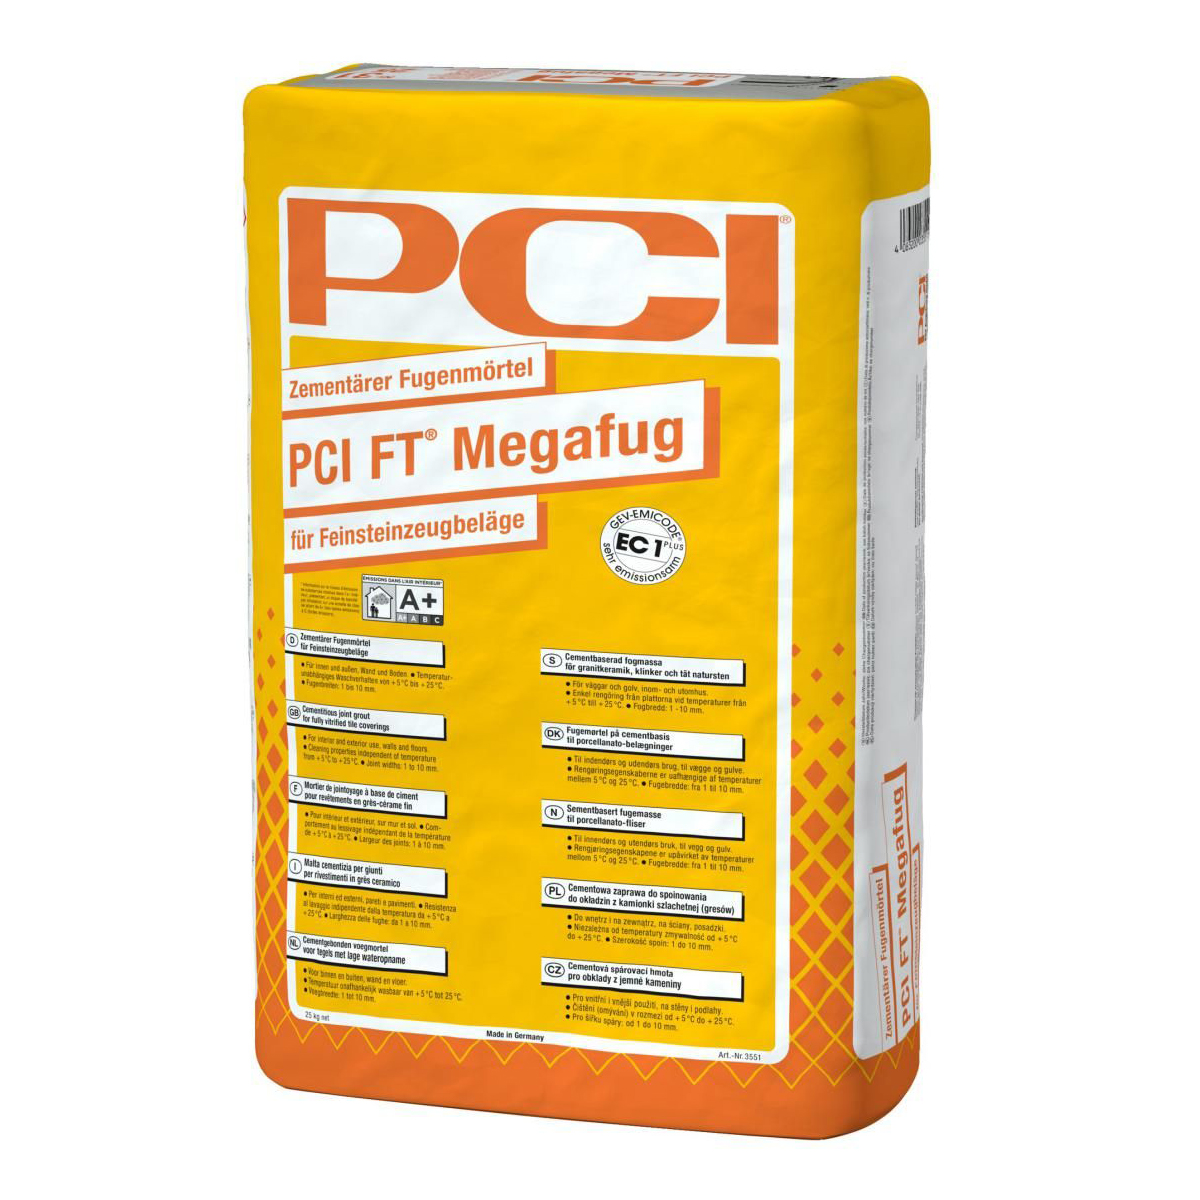 Mortier de jointoiement pour les revêtements en faïence et grès cérame et pour l'intérieur et l'extérieur PCI FT Megafug